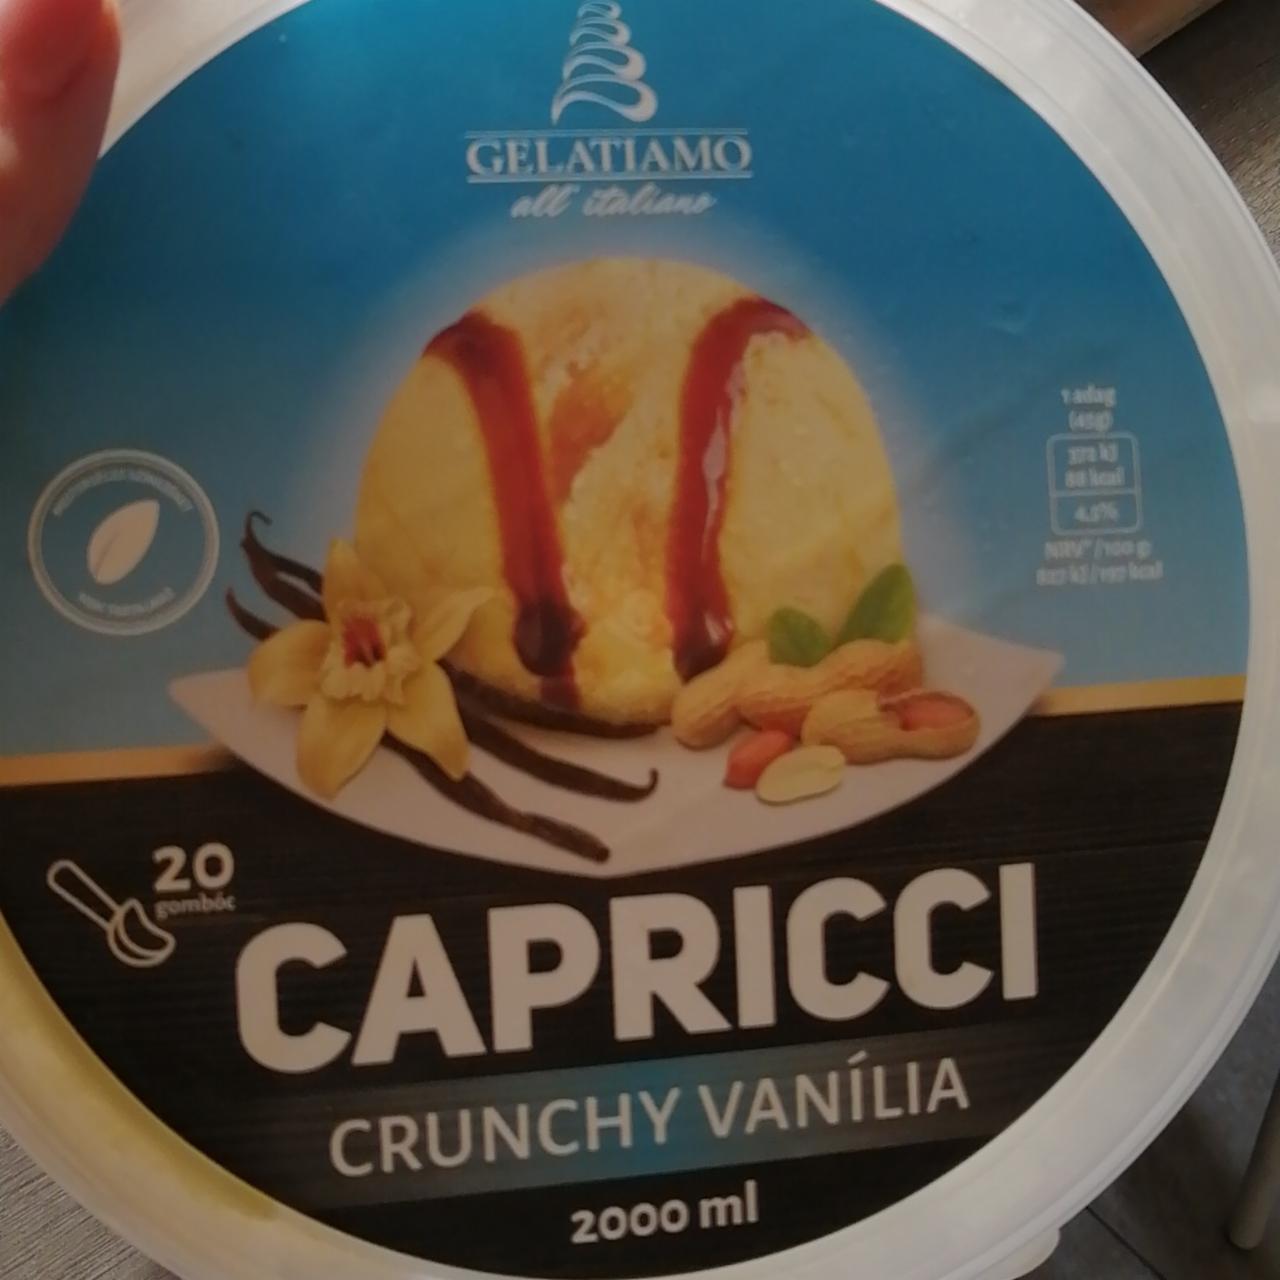 Képek - Capricci Crunchy Vanília jégkrém Gelatiamo